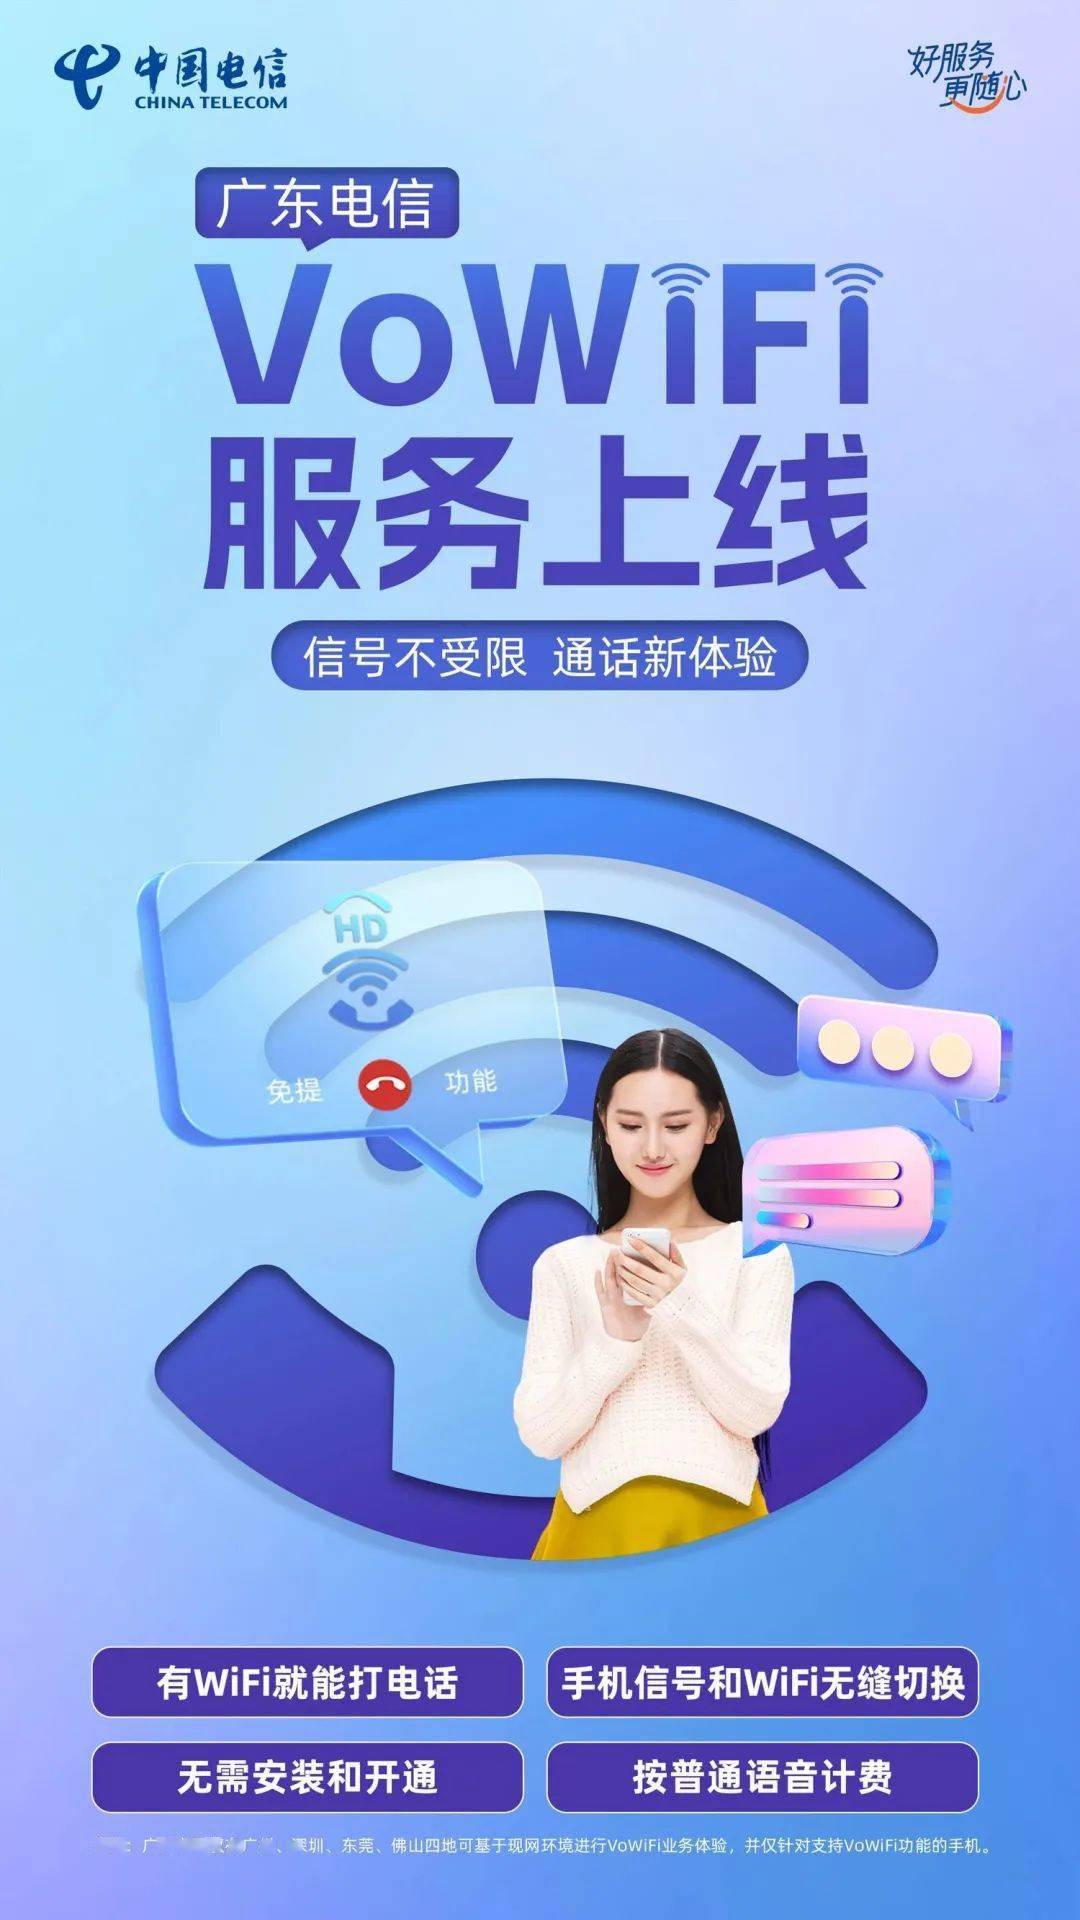 中国电信率先上线VoWiFi服务 目前仅支持广州、深圳、东莞、佛山四城